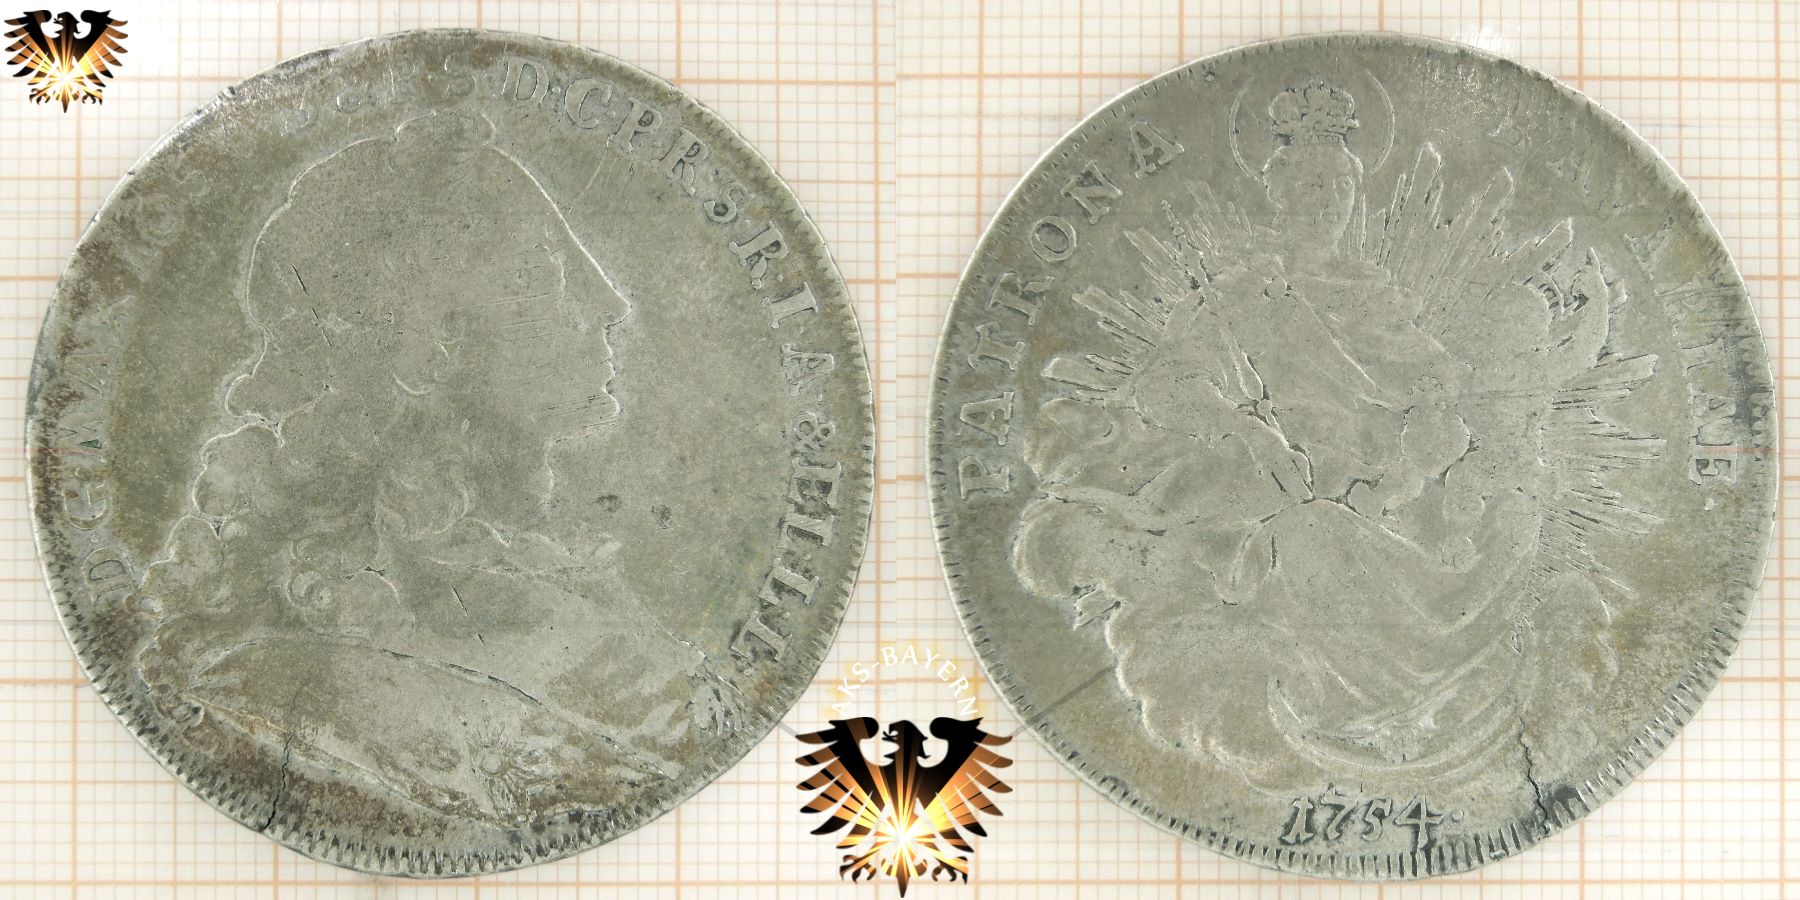 Drei verschiedene Münzen der selben Serie, zur Qualitäts- Bestimmung.